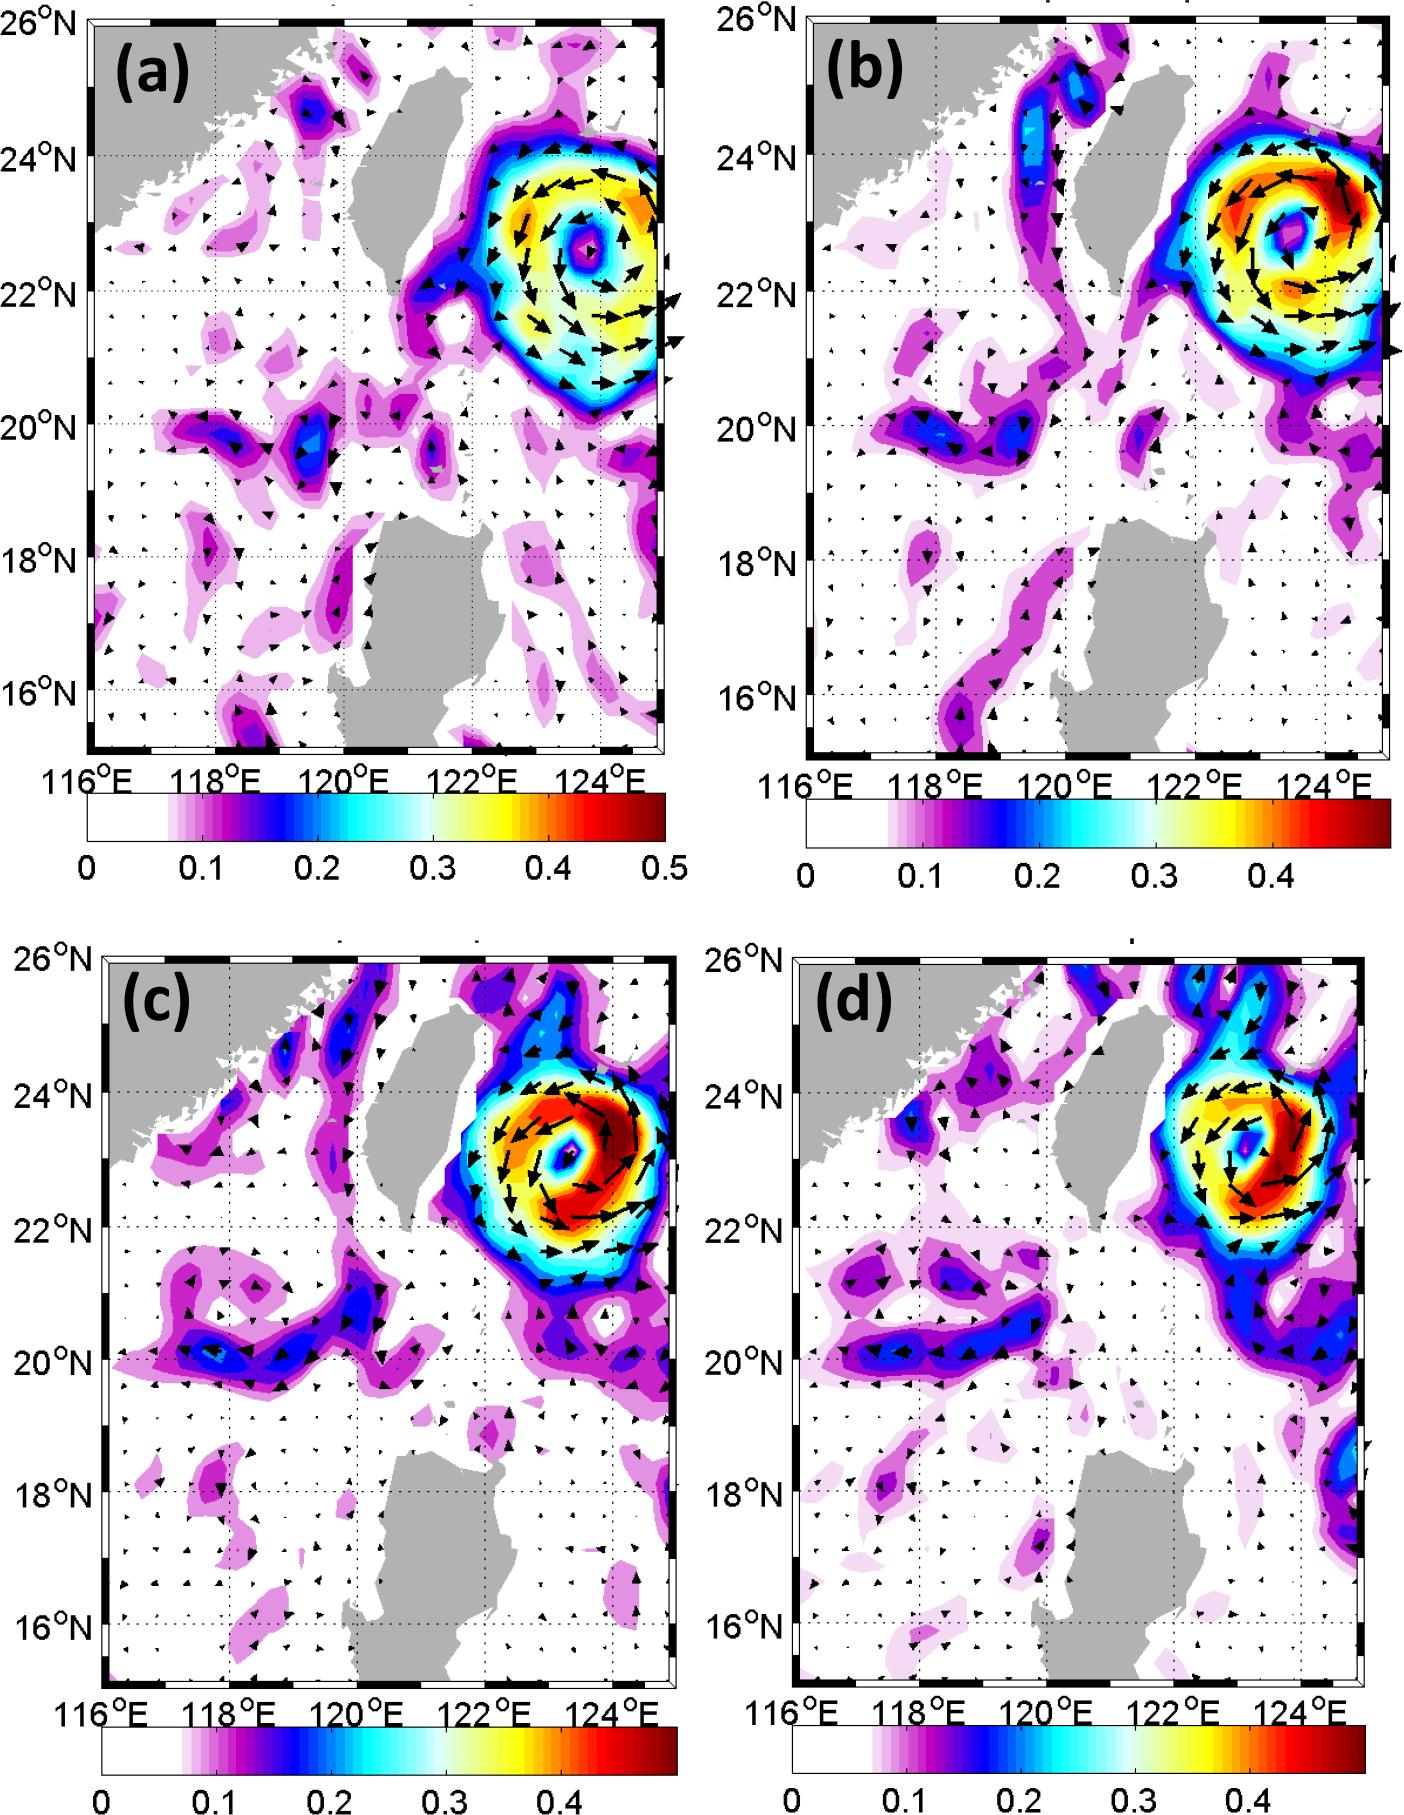 圖二：後向合成分析之流場特徵，分別對應(a)3週前、(b)2週前、(c)1週前以及(d)合成撞擊事件（即套流成熟期）剛要結束當下之合成流場。顏色漸層表示目前速度（單位：m/s），箭頭表示目前方向。此圖顯示了臺灣東岸西侵氣漩渦之影響之下，呂宋海峽西側黑潮套流逐步成形之歷程。